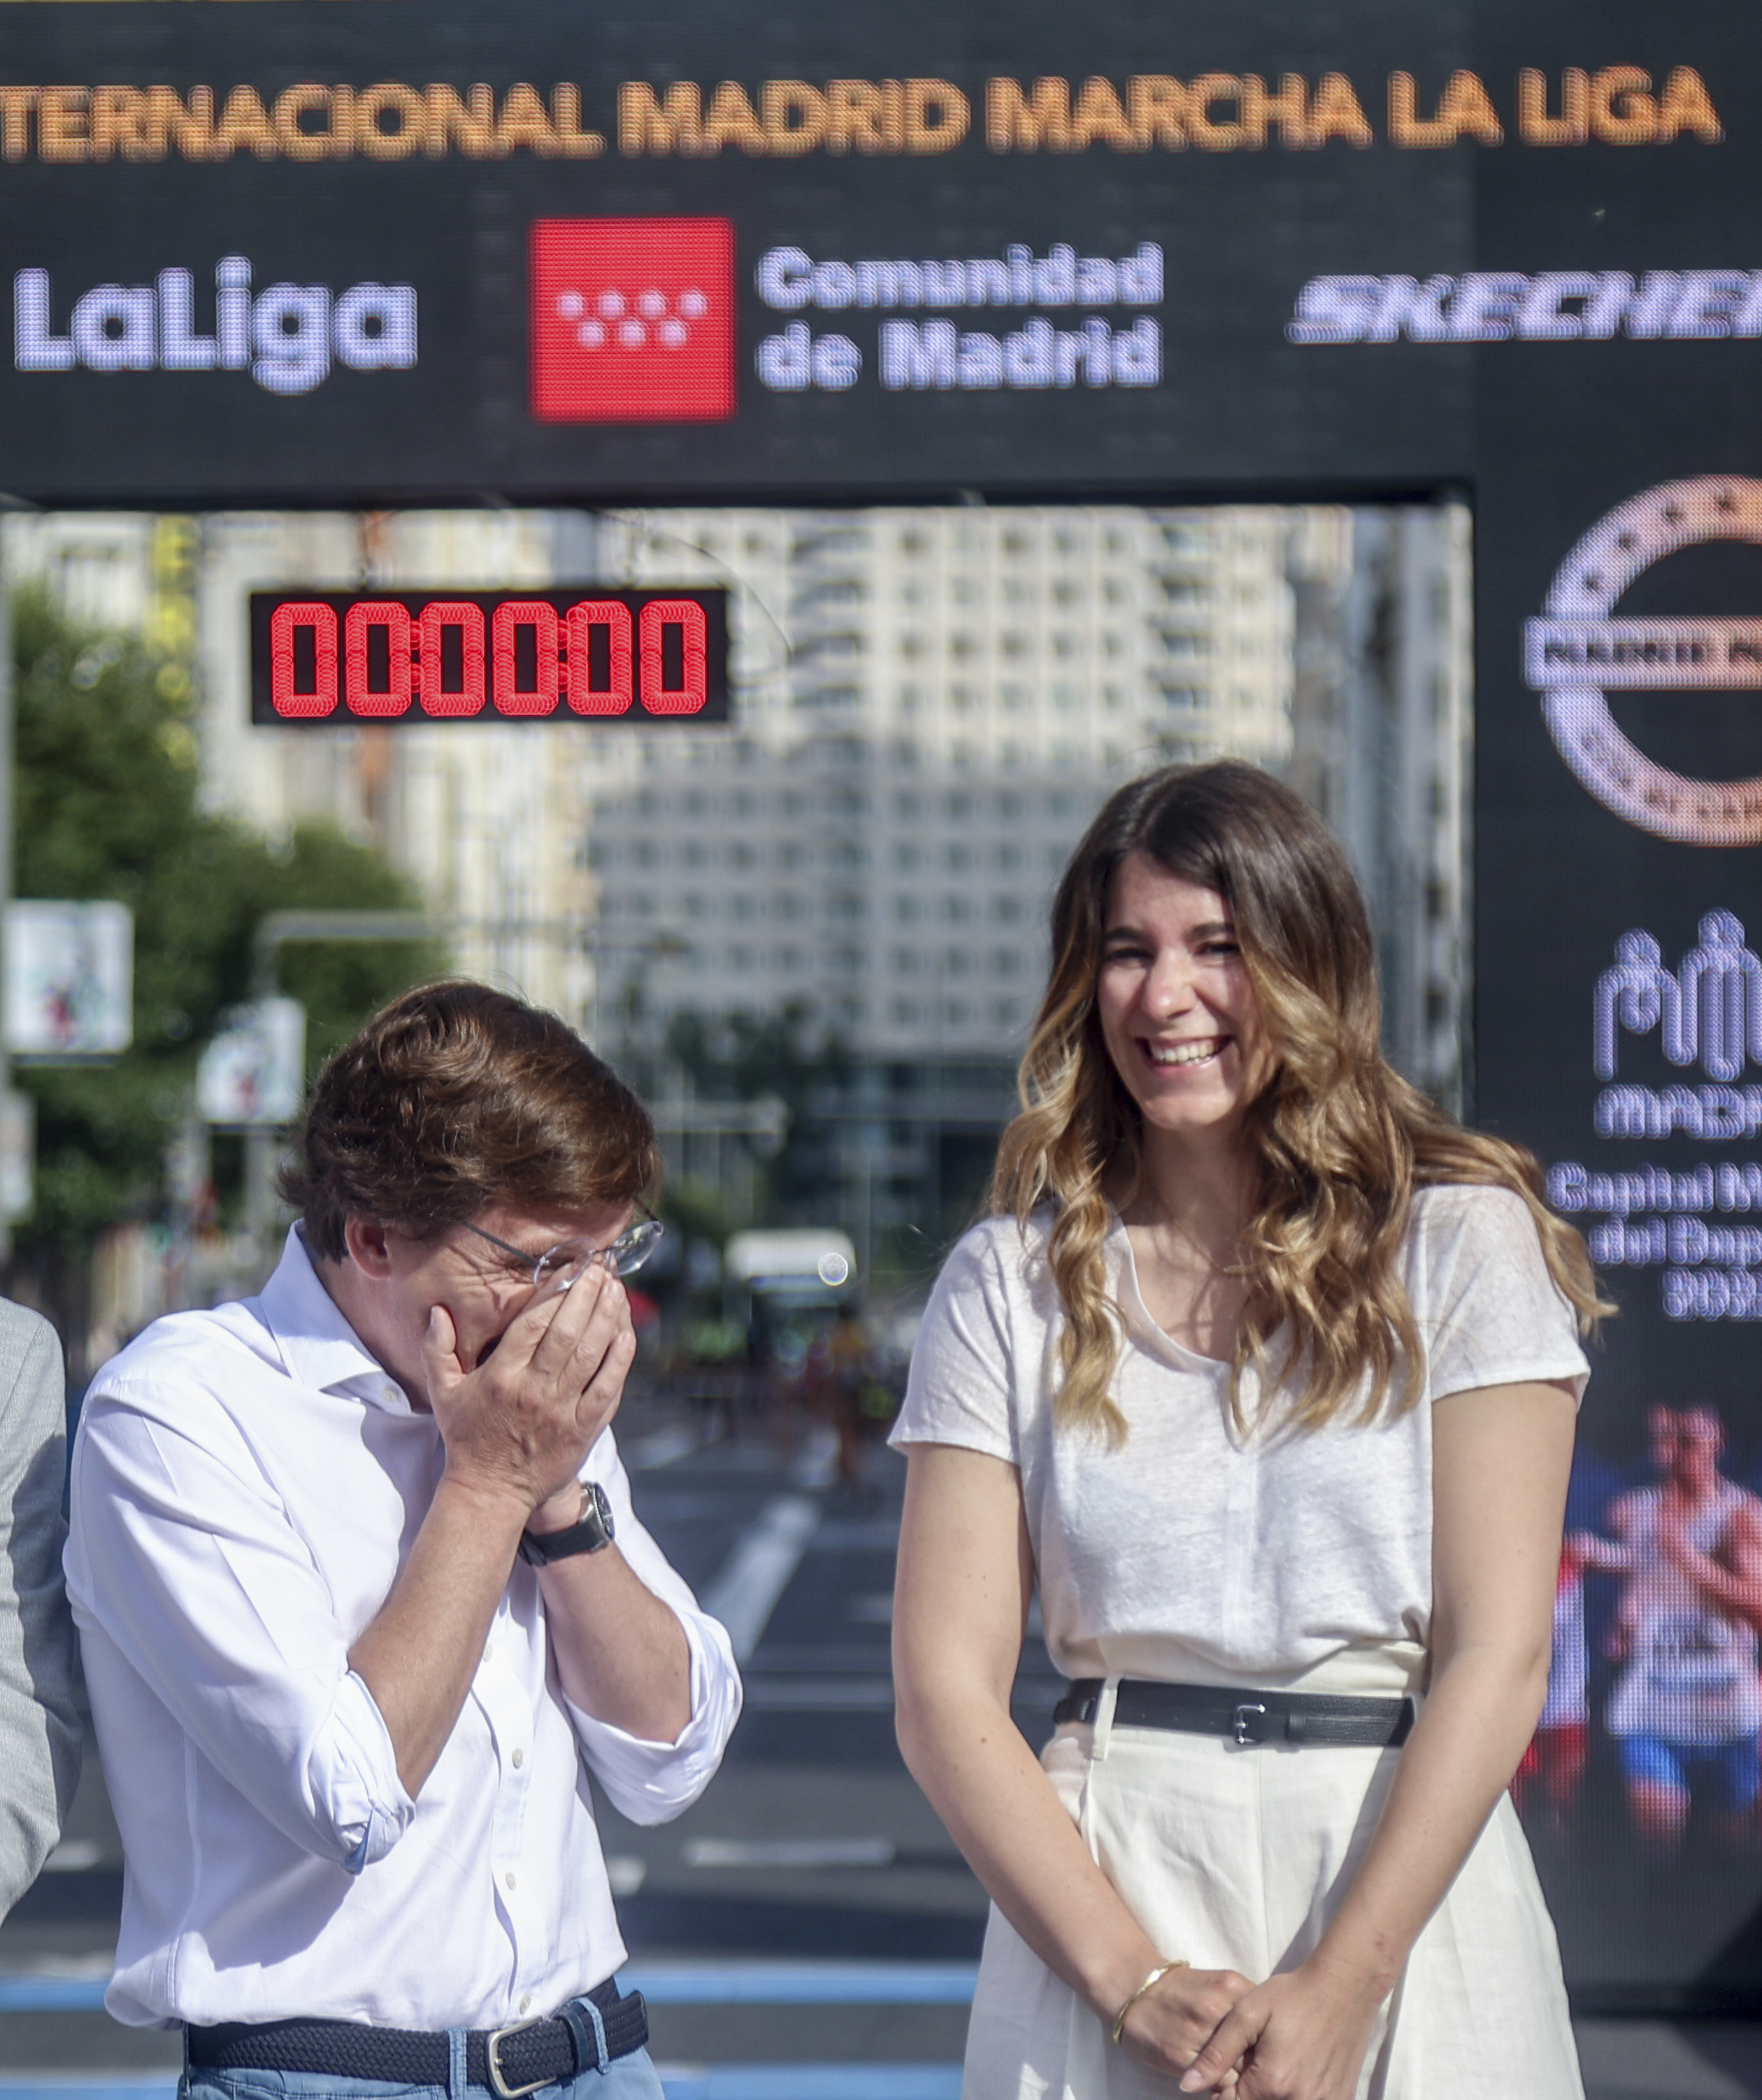 Miranda, junto a Almeida, en la primera edicin del Gran Premio Internacional Madrid Marcha.